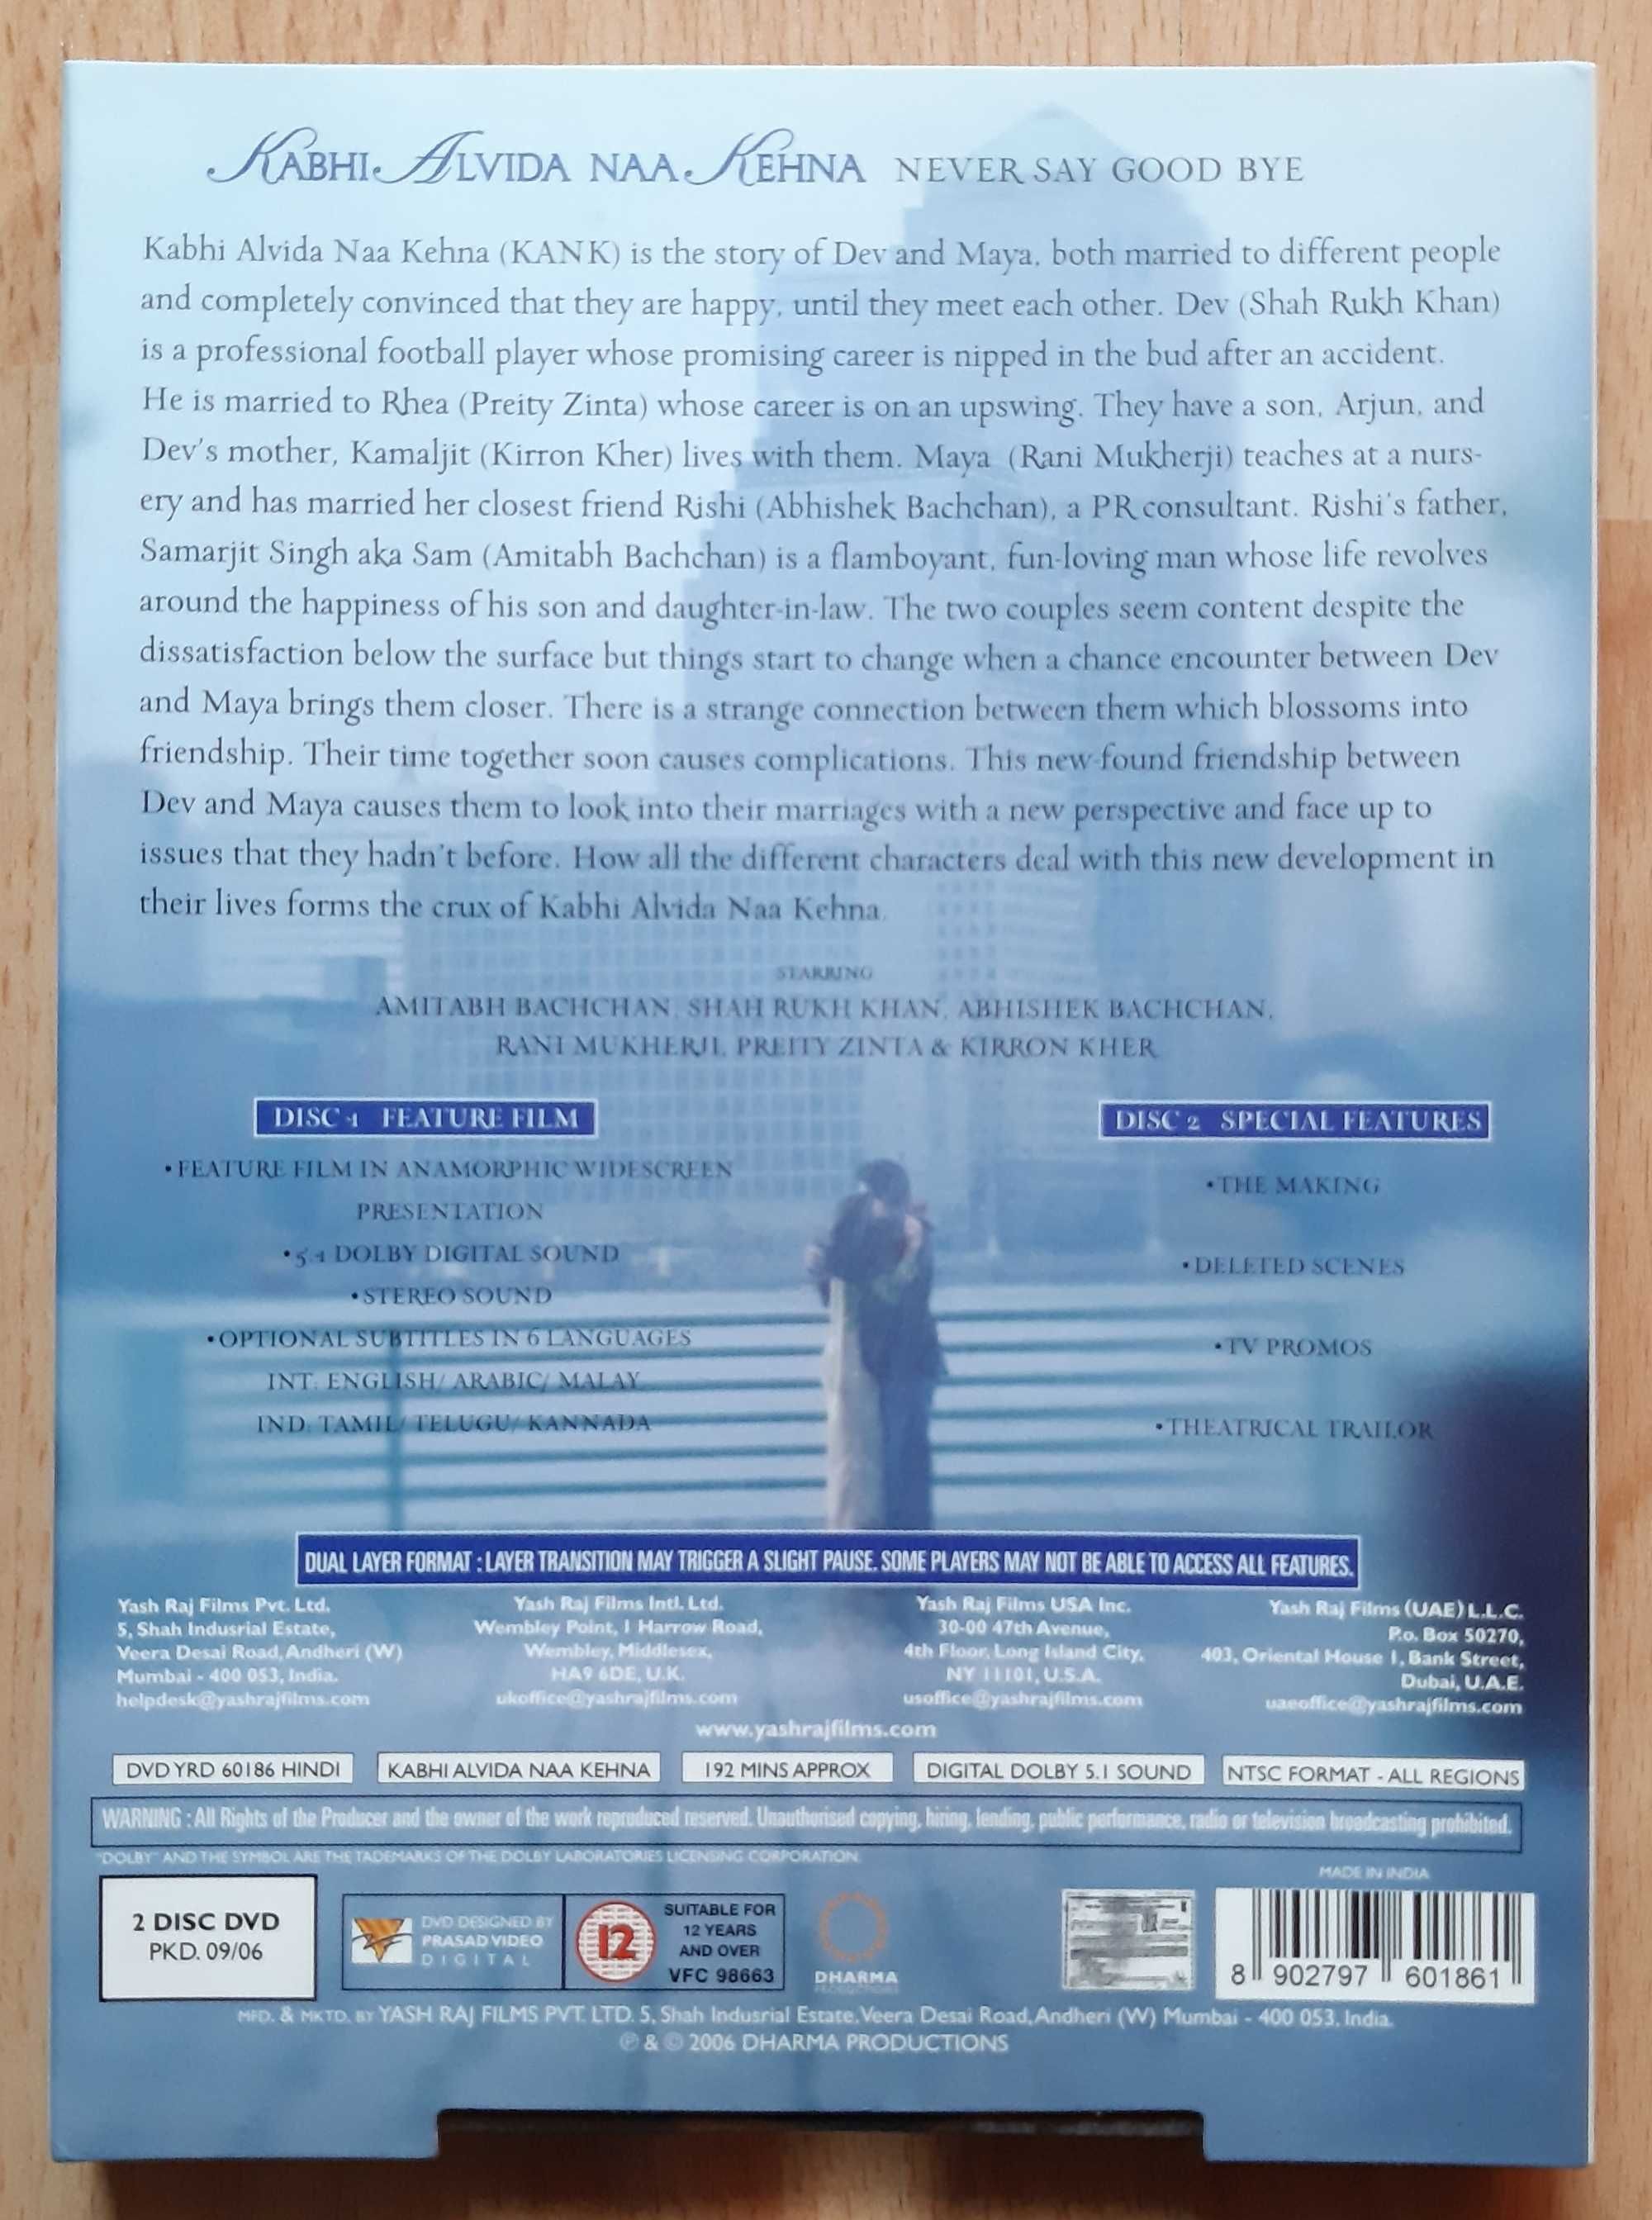 Discuri DVD, originale filme muzica indiana (hindi subtitrare engleza)